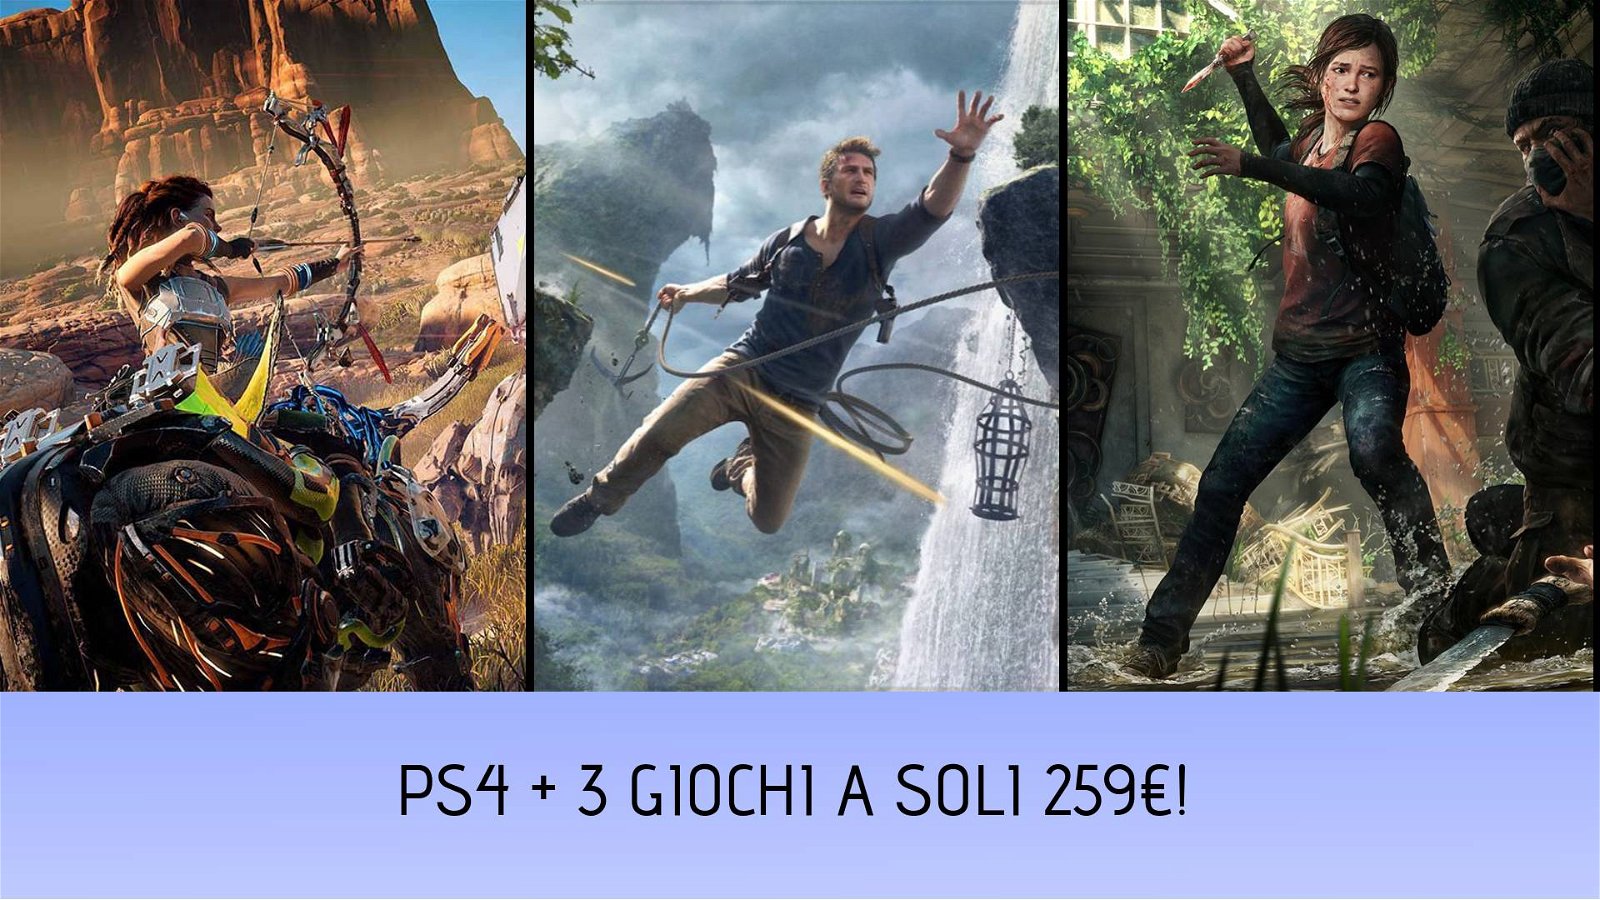 Immagine di PS4 con Horizon Zero Dawn, The Last of Us e Uncharted 4 a soli 259€!